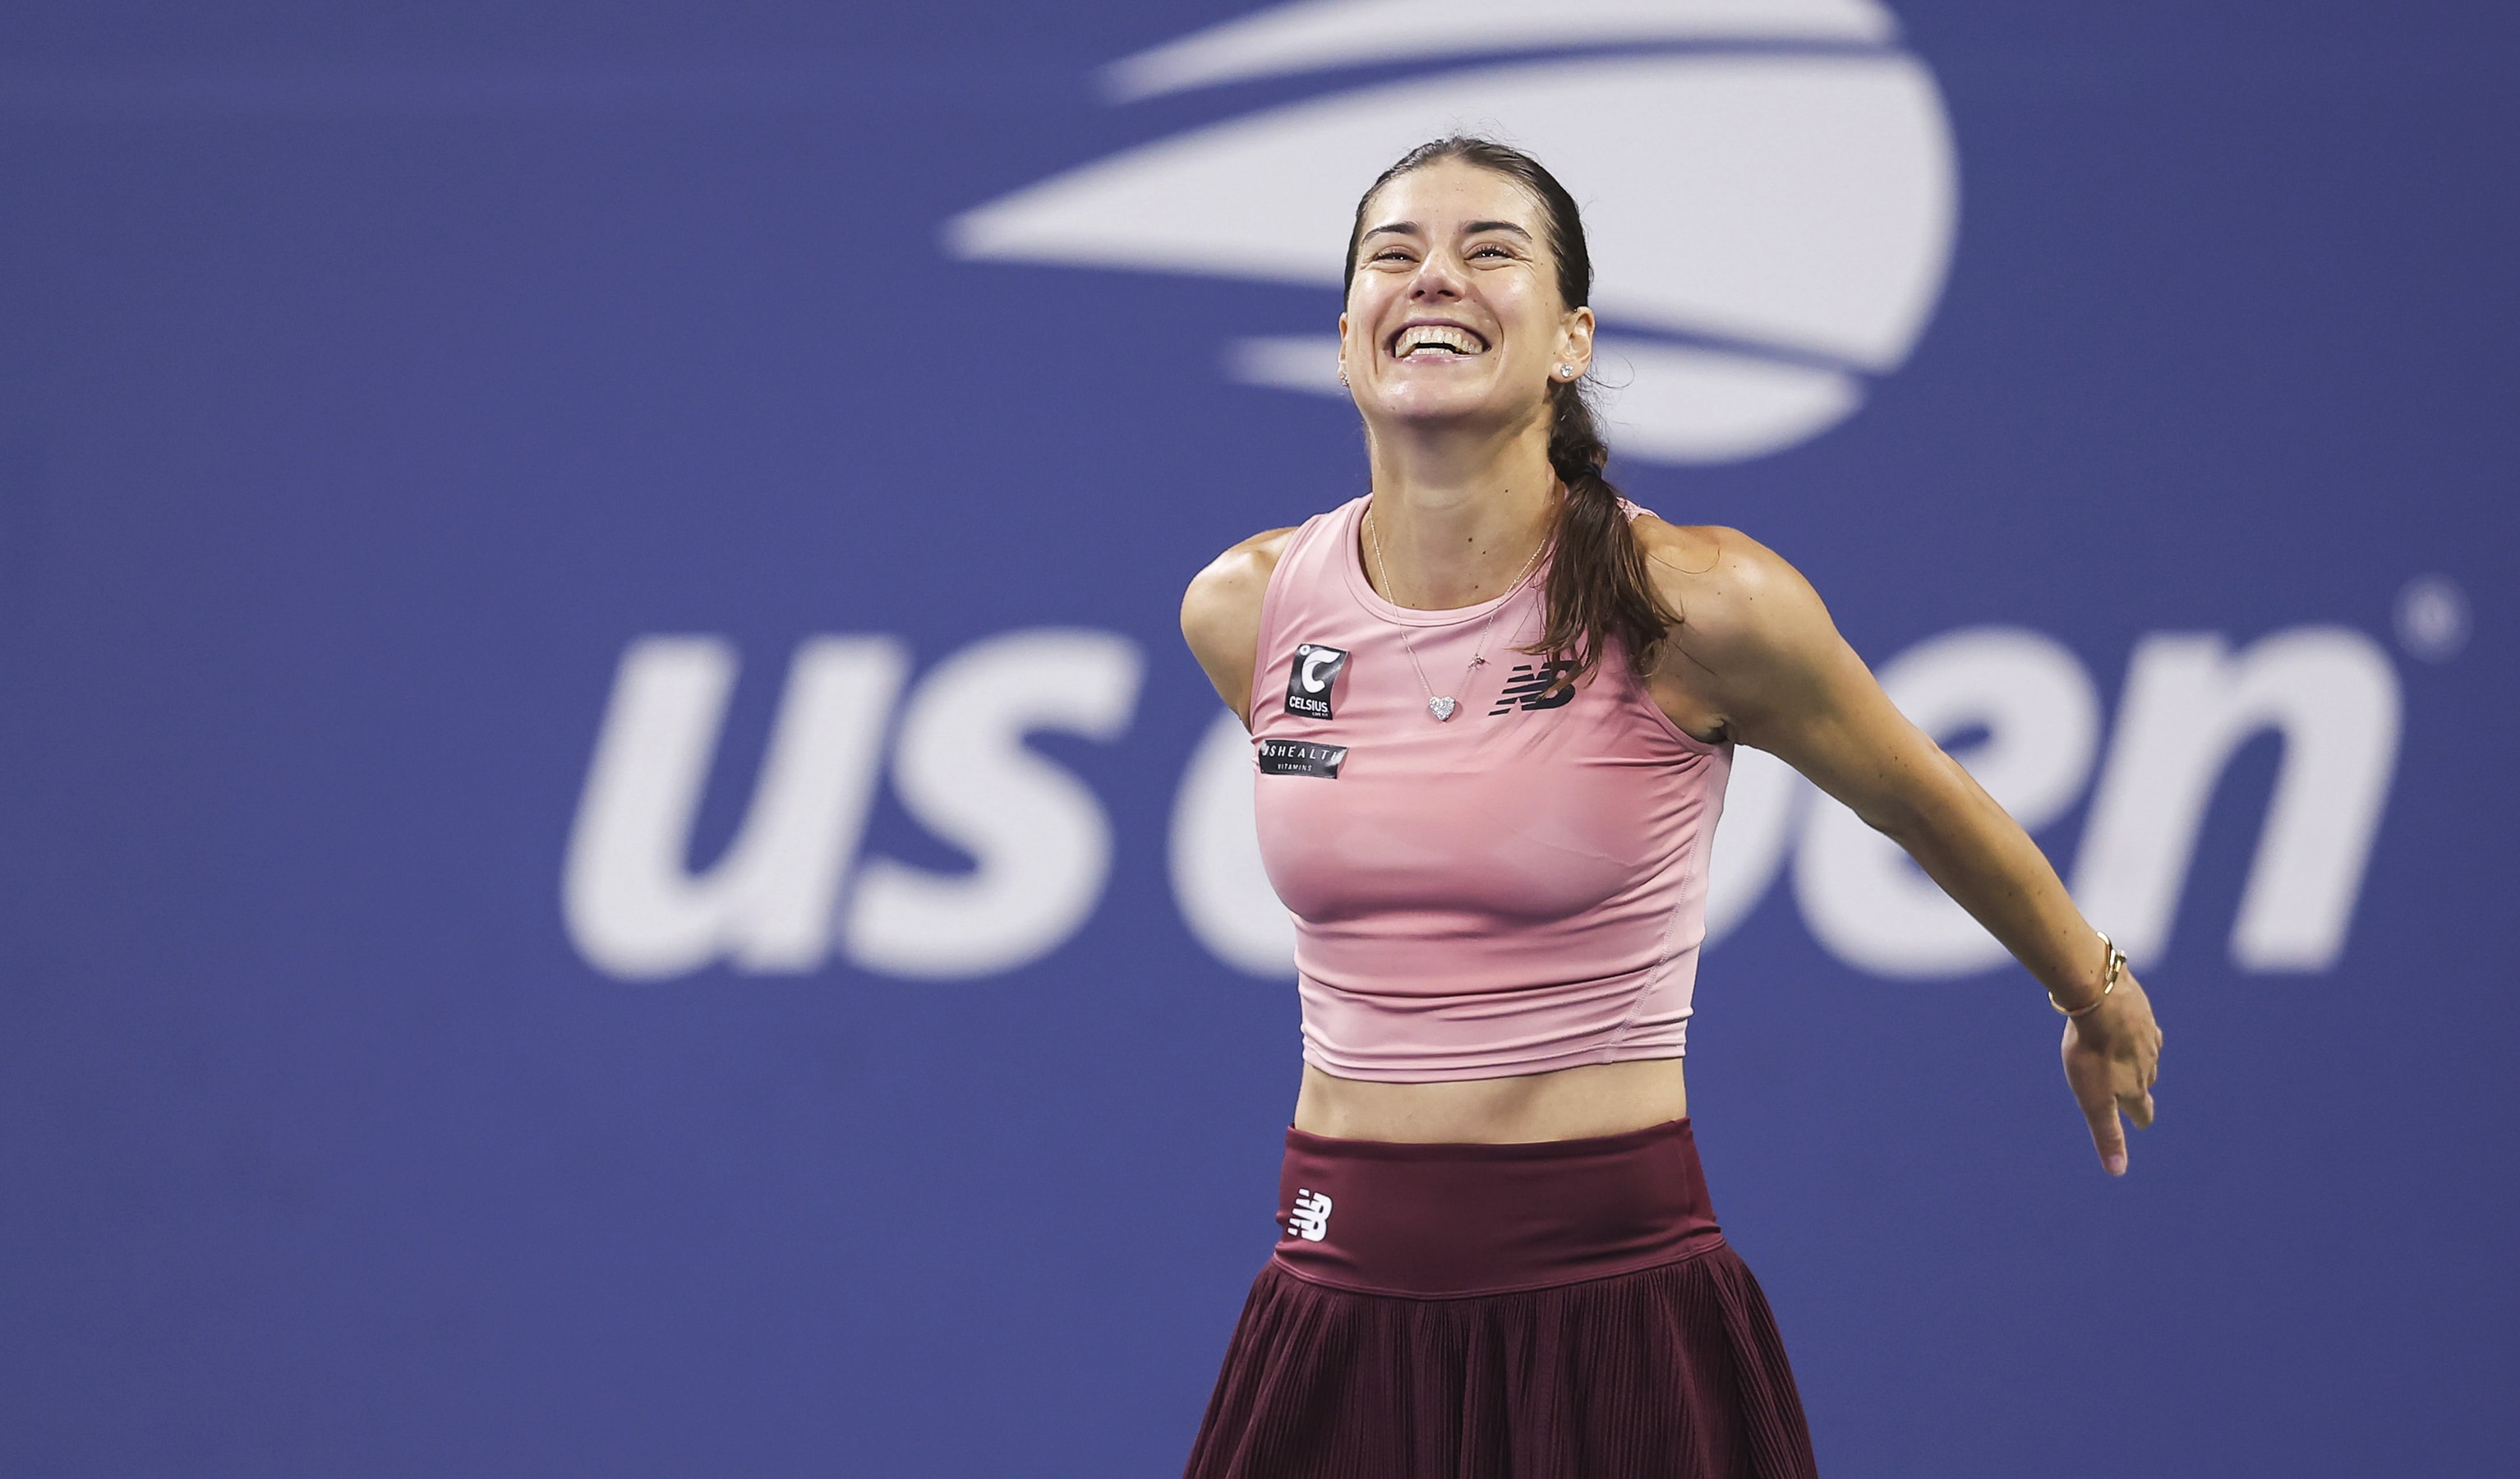 Sorana Cirstea reaches second Grand Slam quarterfinal 53 majors after contesting first